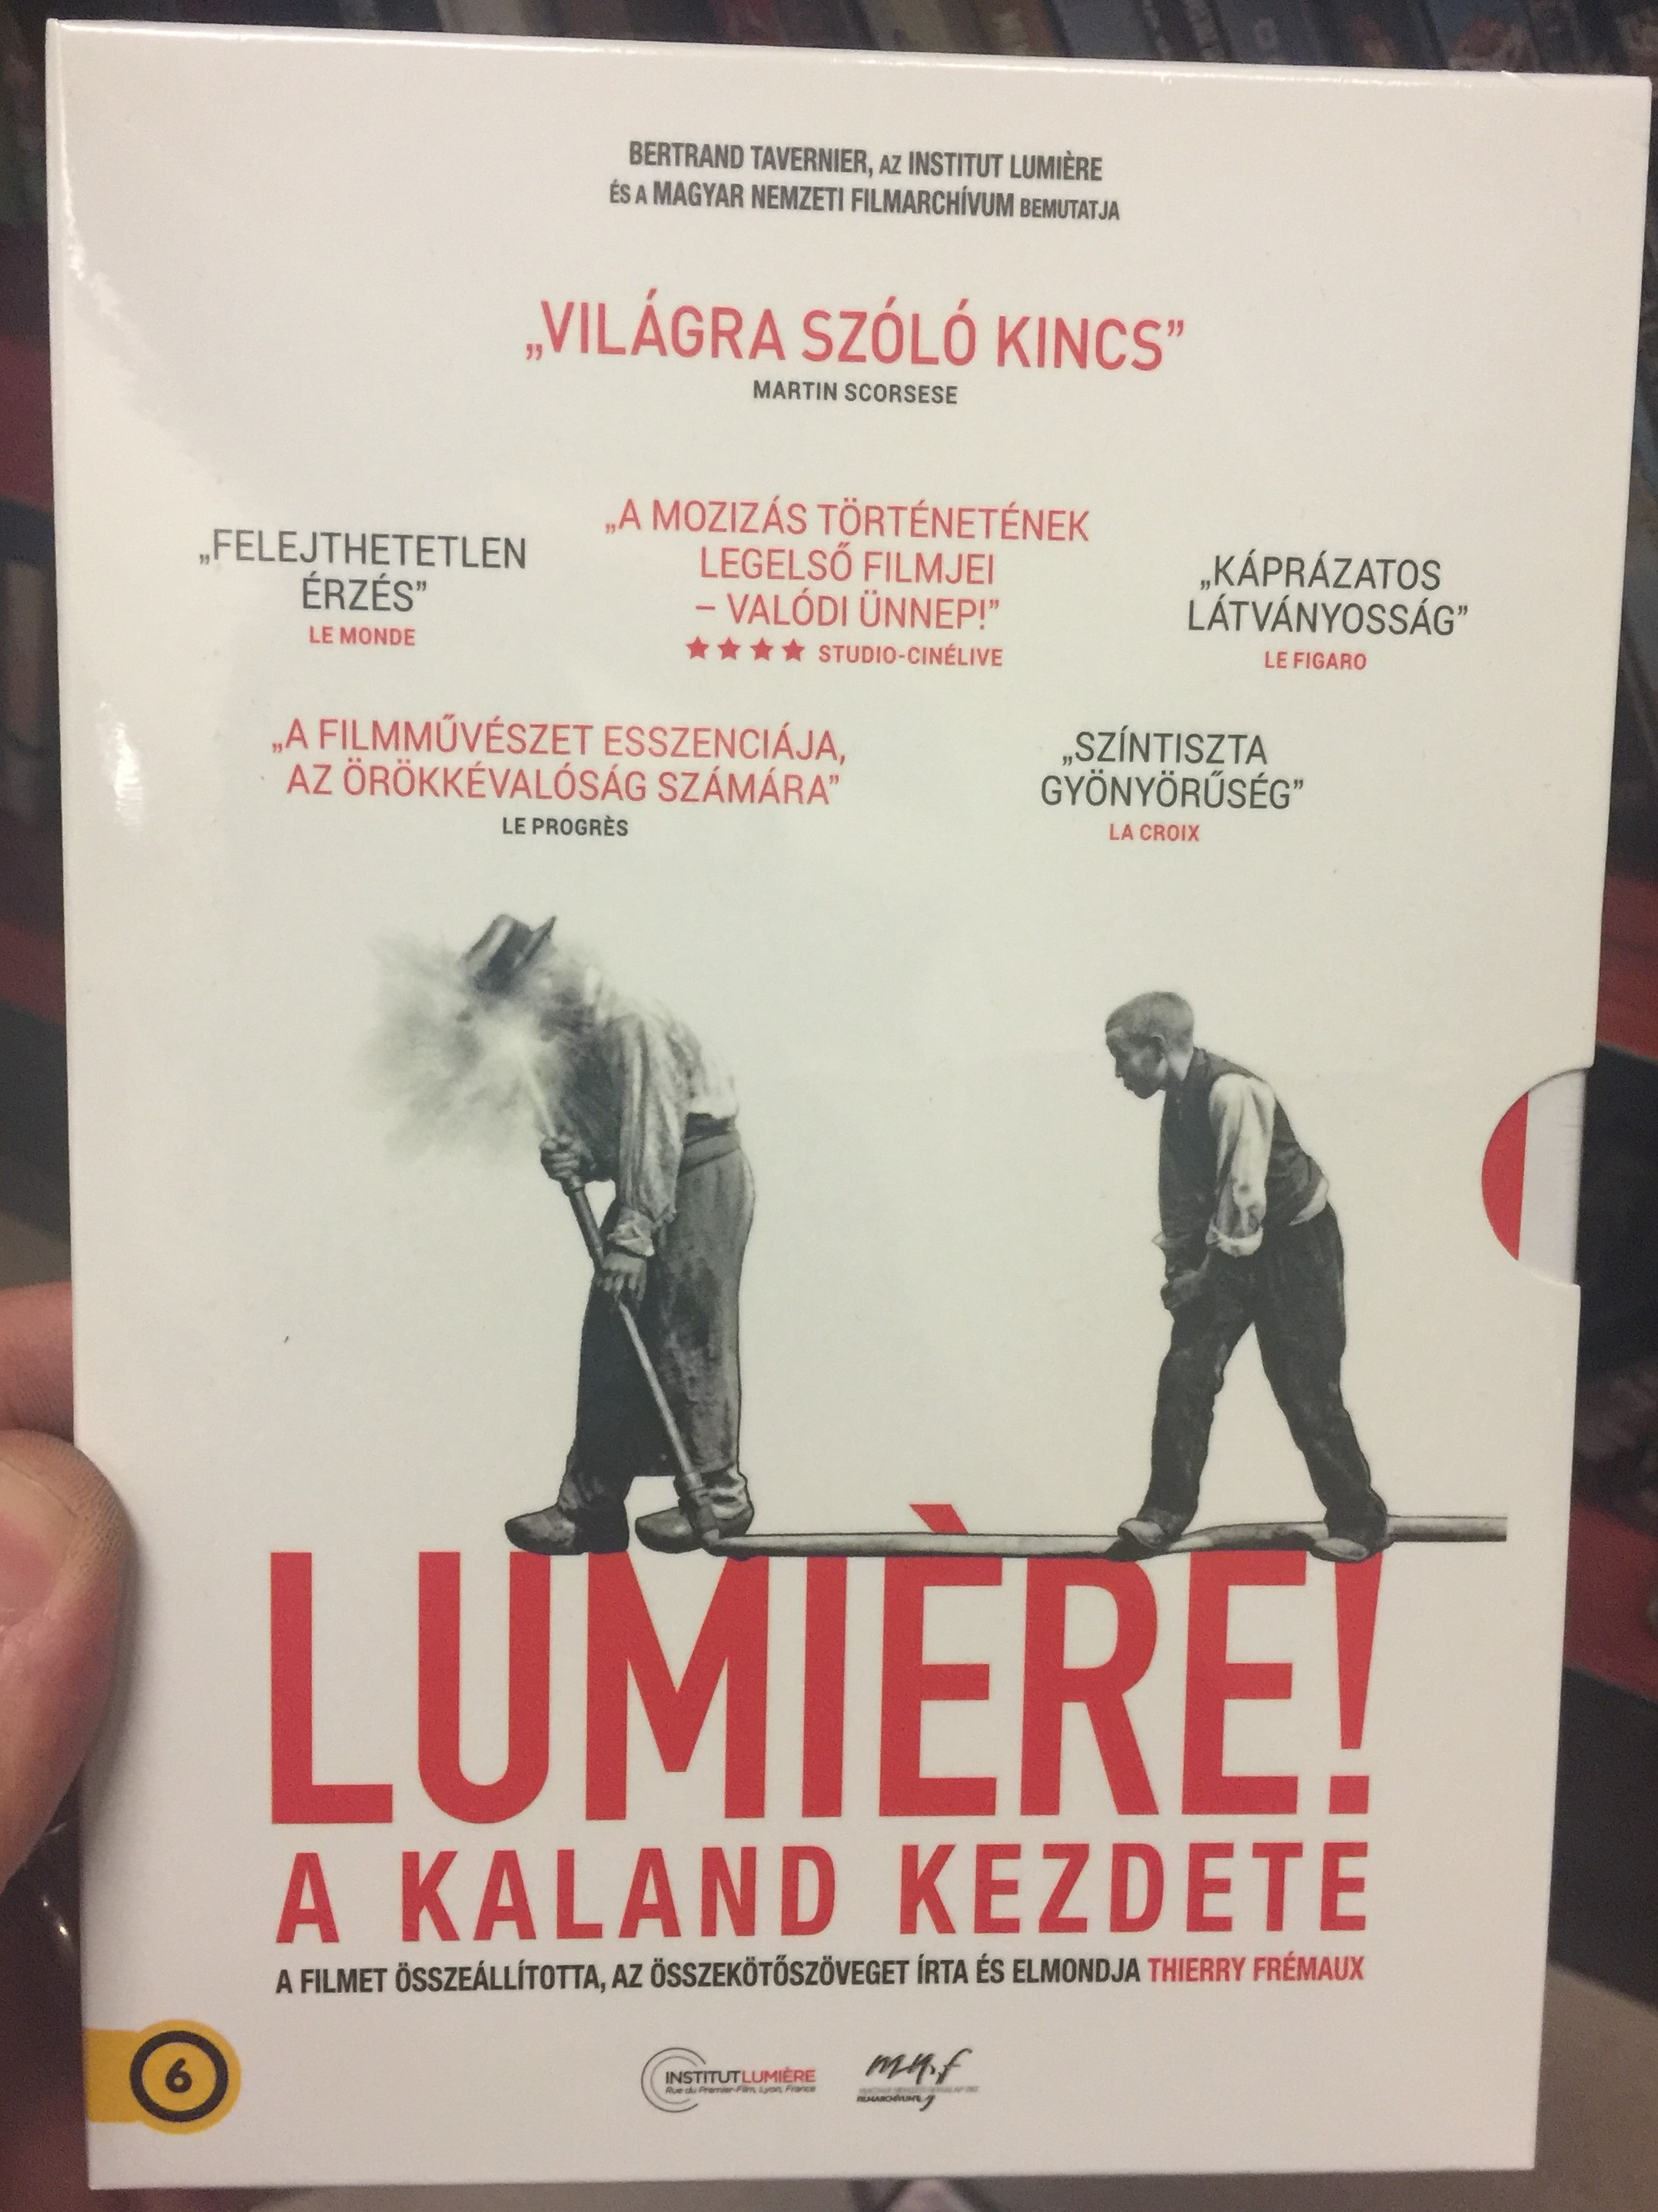 Lumière! DVD 2016 Lumiére! – A kaland kezdete / Directed by Thierry Frémaux  / Starring: Auguste Lumière, Louis Lumière, Martin Scorsese -  bibleinmylanguage